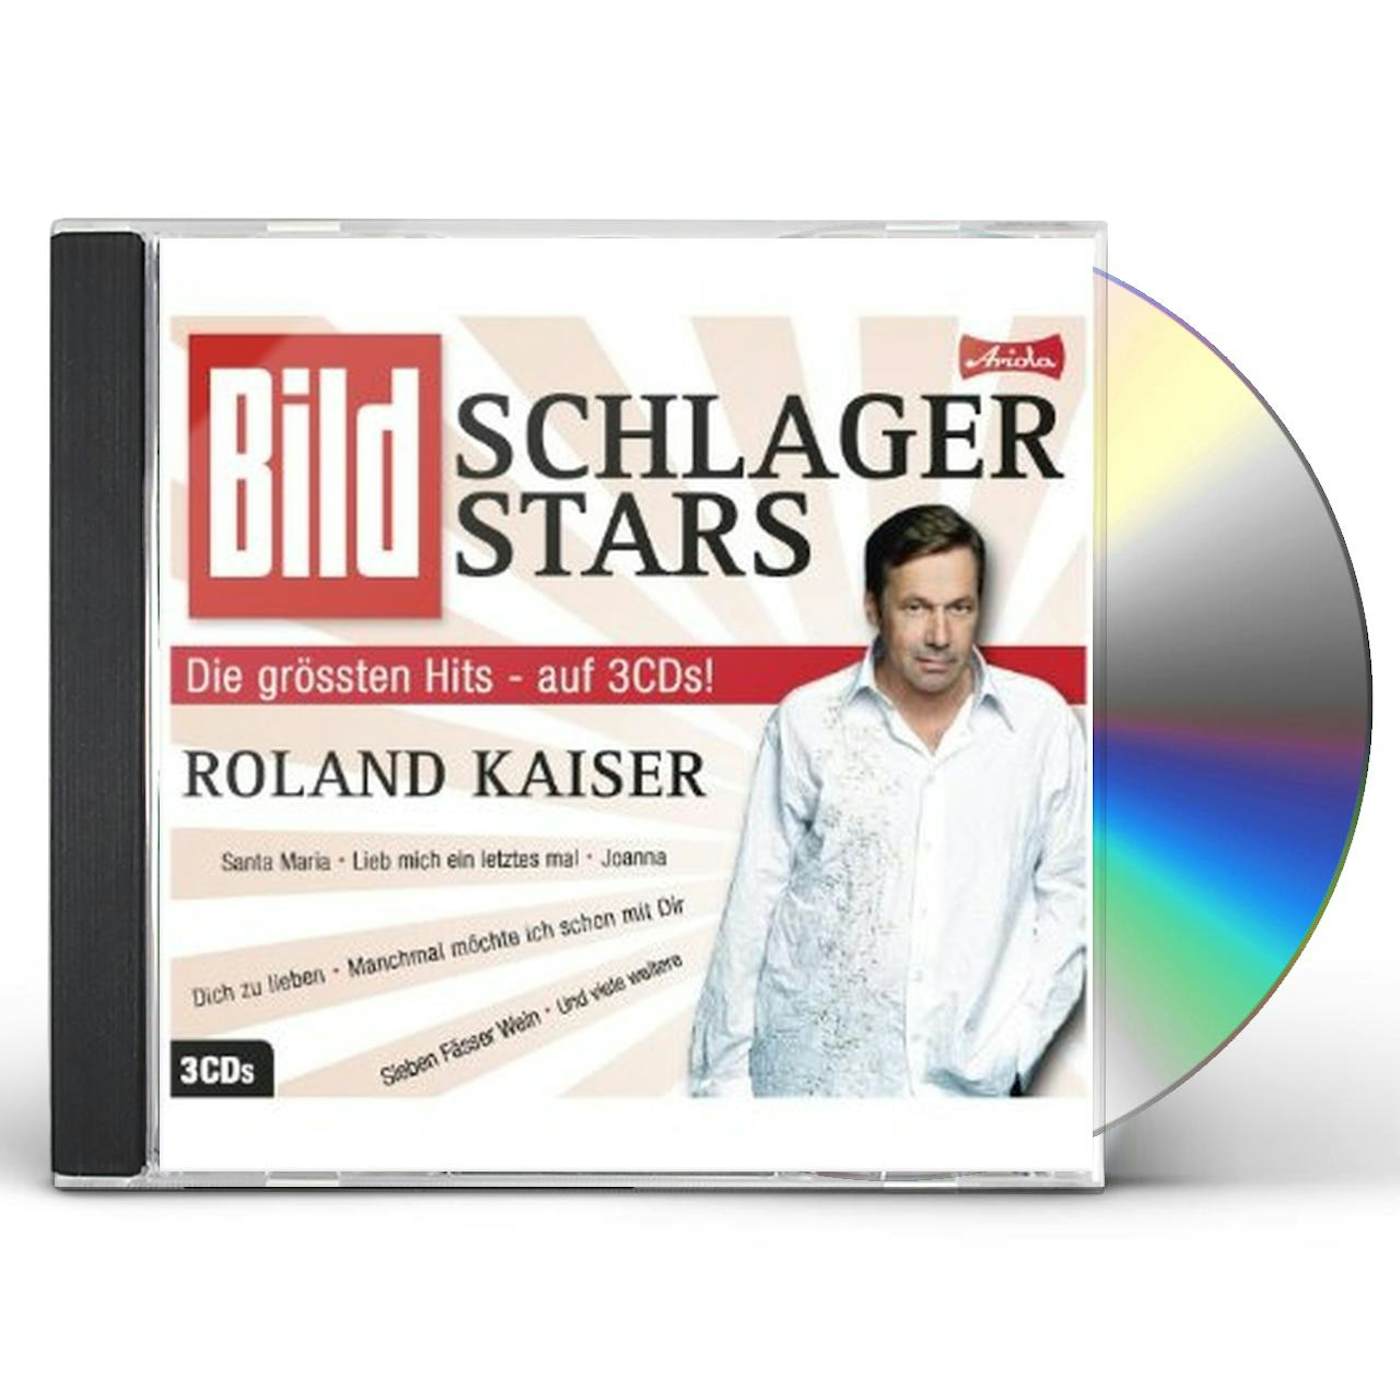 Roland Kaiser BILD SCHLAGER STARS CD